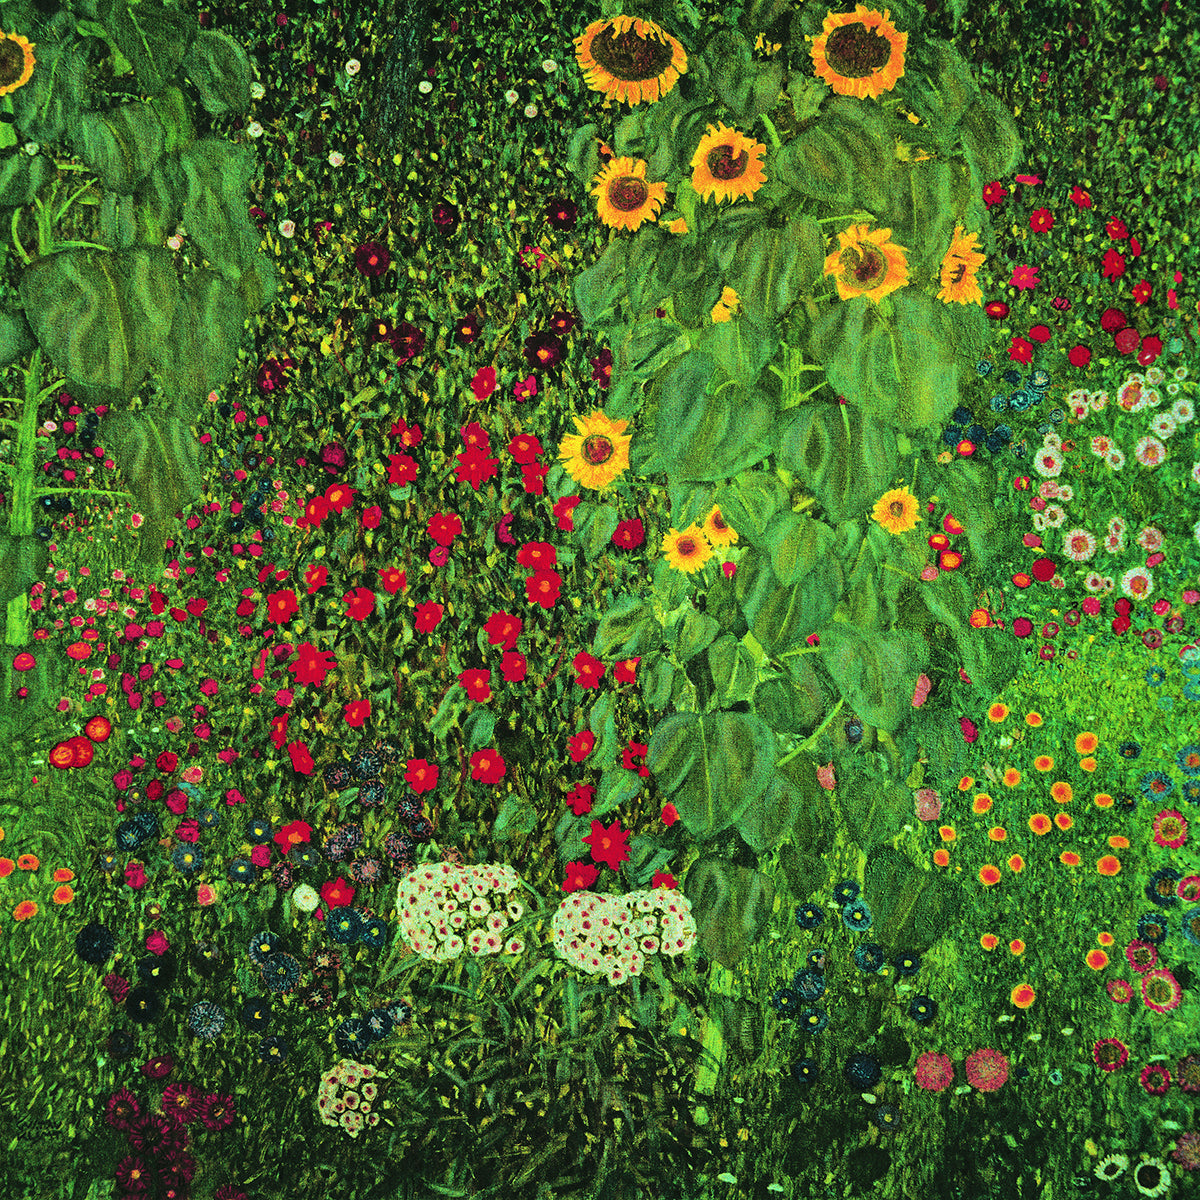 Farm garden with sunflowers by Gustav Klimt